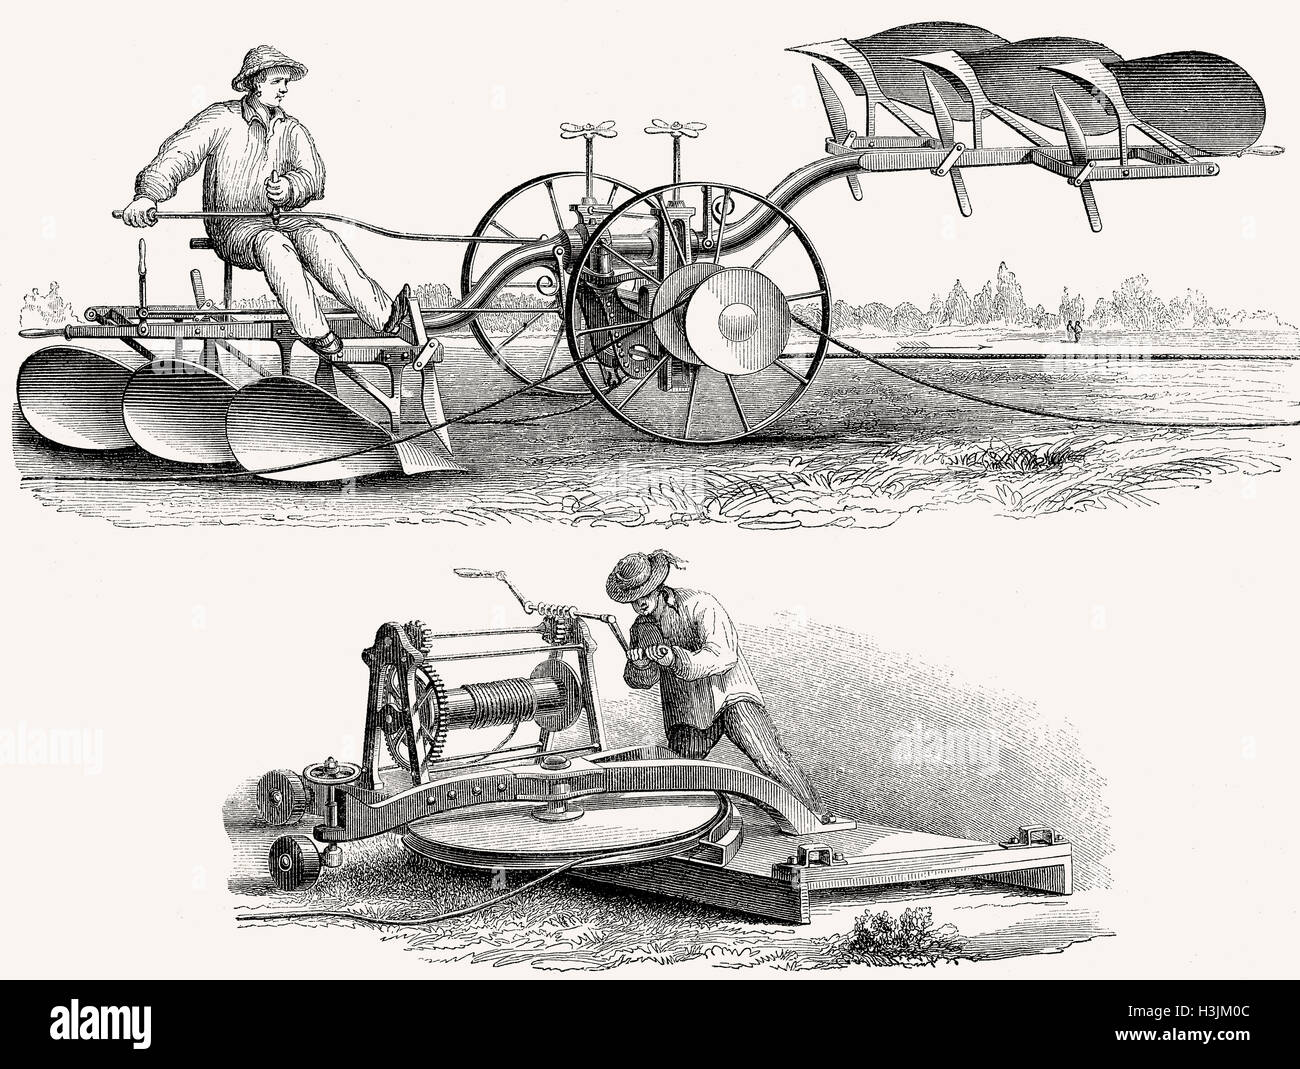 Eine landwirtschaftliche Pflug System angetrieben durch eine Seilwinde von Muskelkraft, erfunden von M. Lotz, 19. Jahrhundert Stockfoto